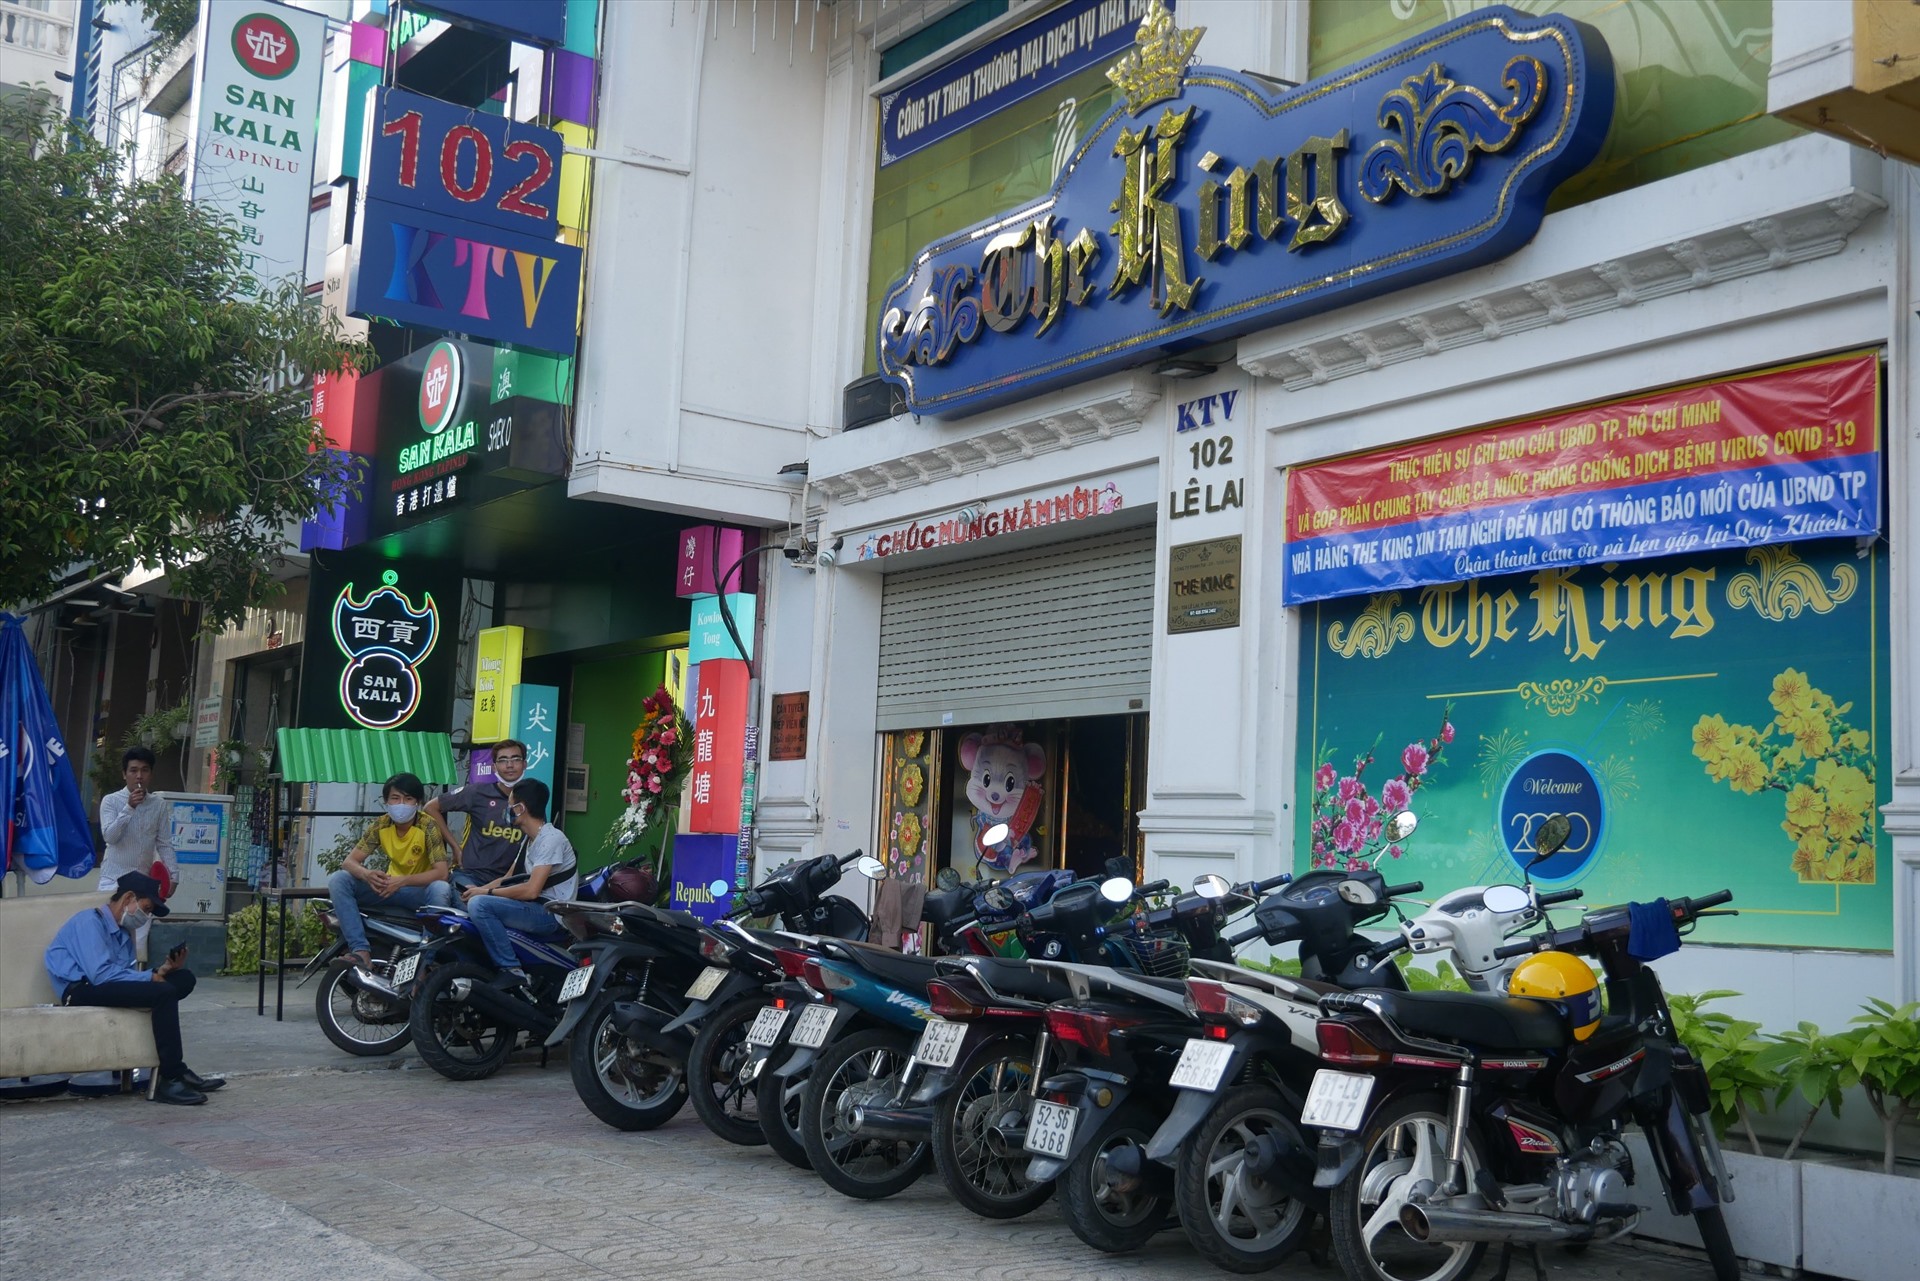 Một nhà hàng trên đường Lê Lai (quận 1) treo biển tạm dừng hoạt động cho đến khi có thông báo mới của UBND TPHCM.